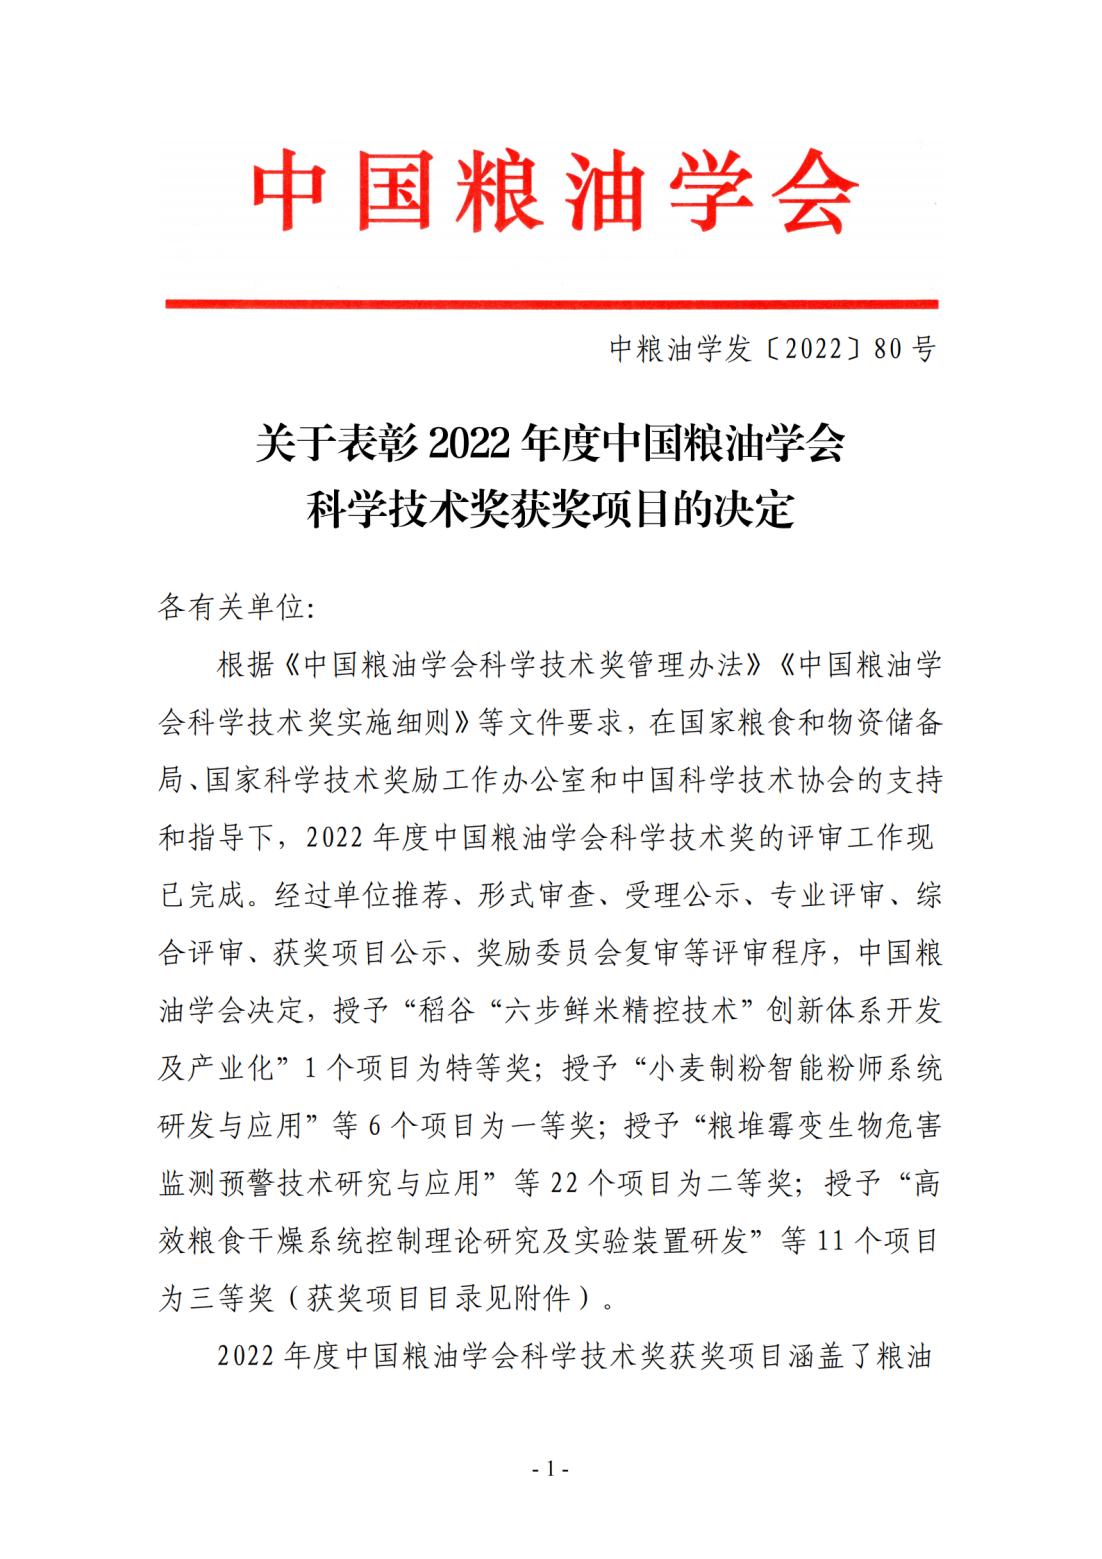 关于表彰2022年度中国粮油学会科学技术奖获奖项目的决定